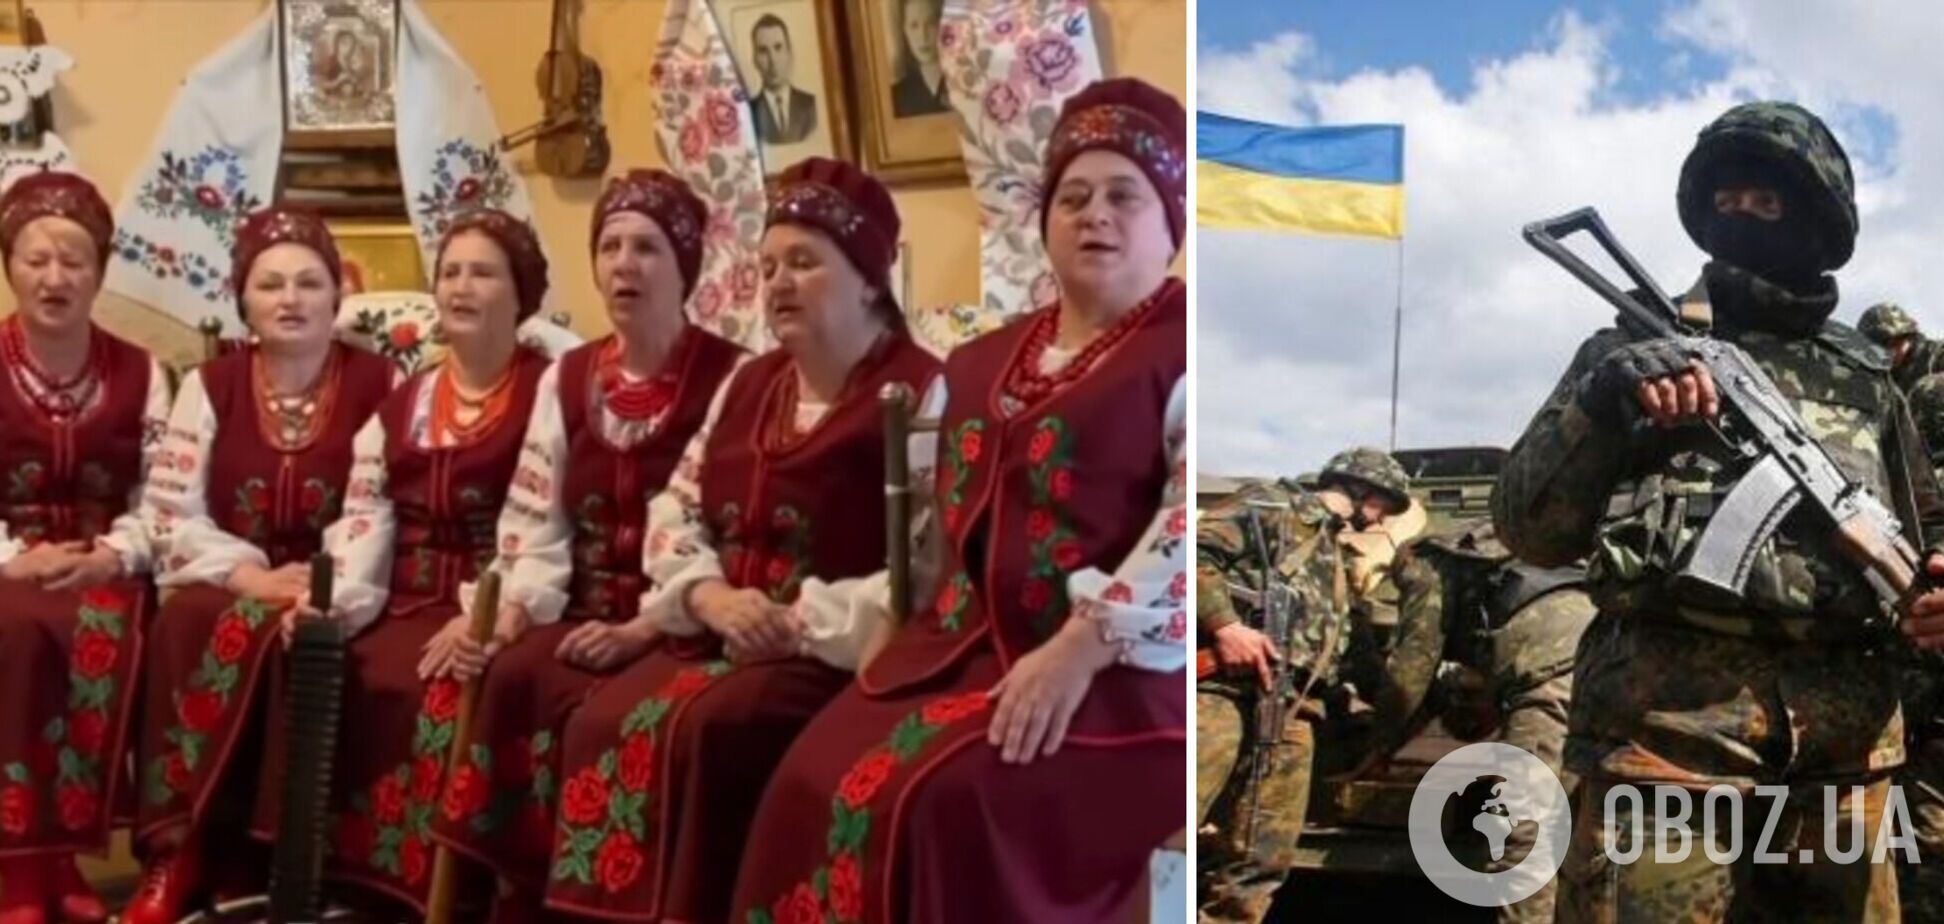 'Горіли танки, палали': в Украине появился новый хит о борьбе с российскими оккупантами. Видео